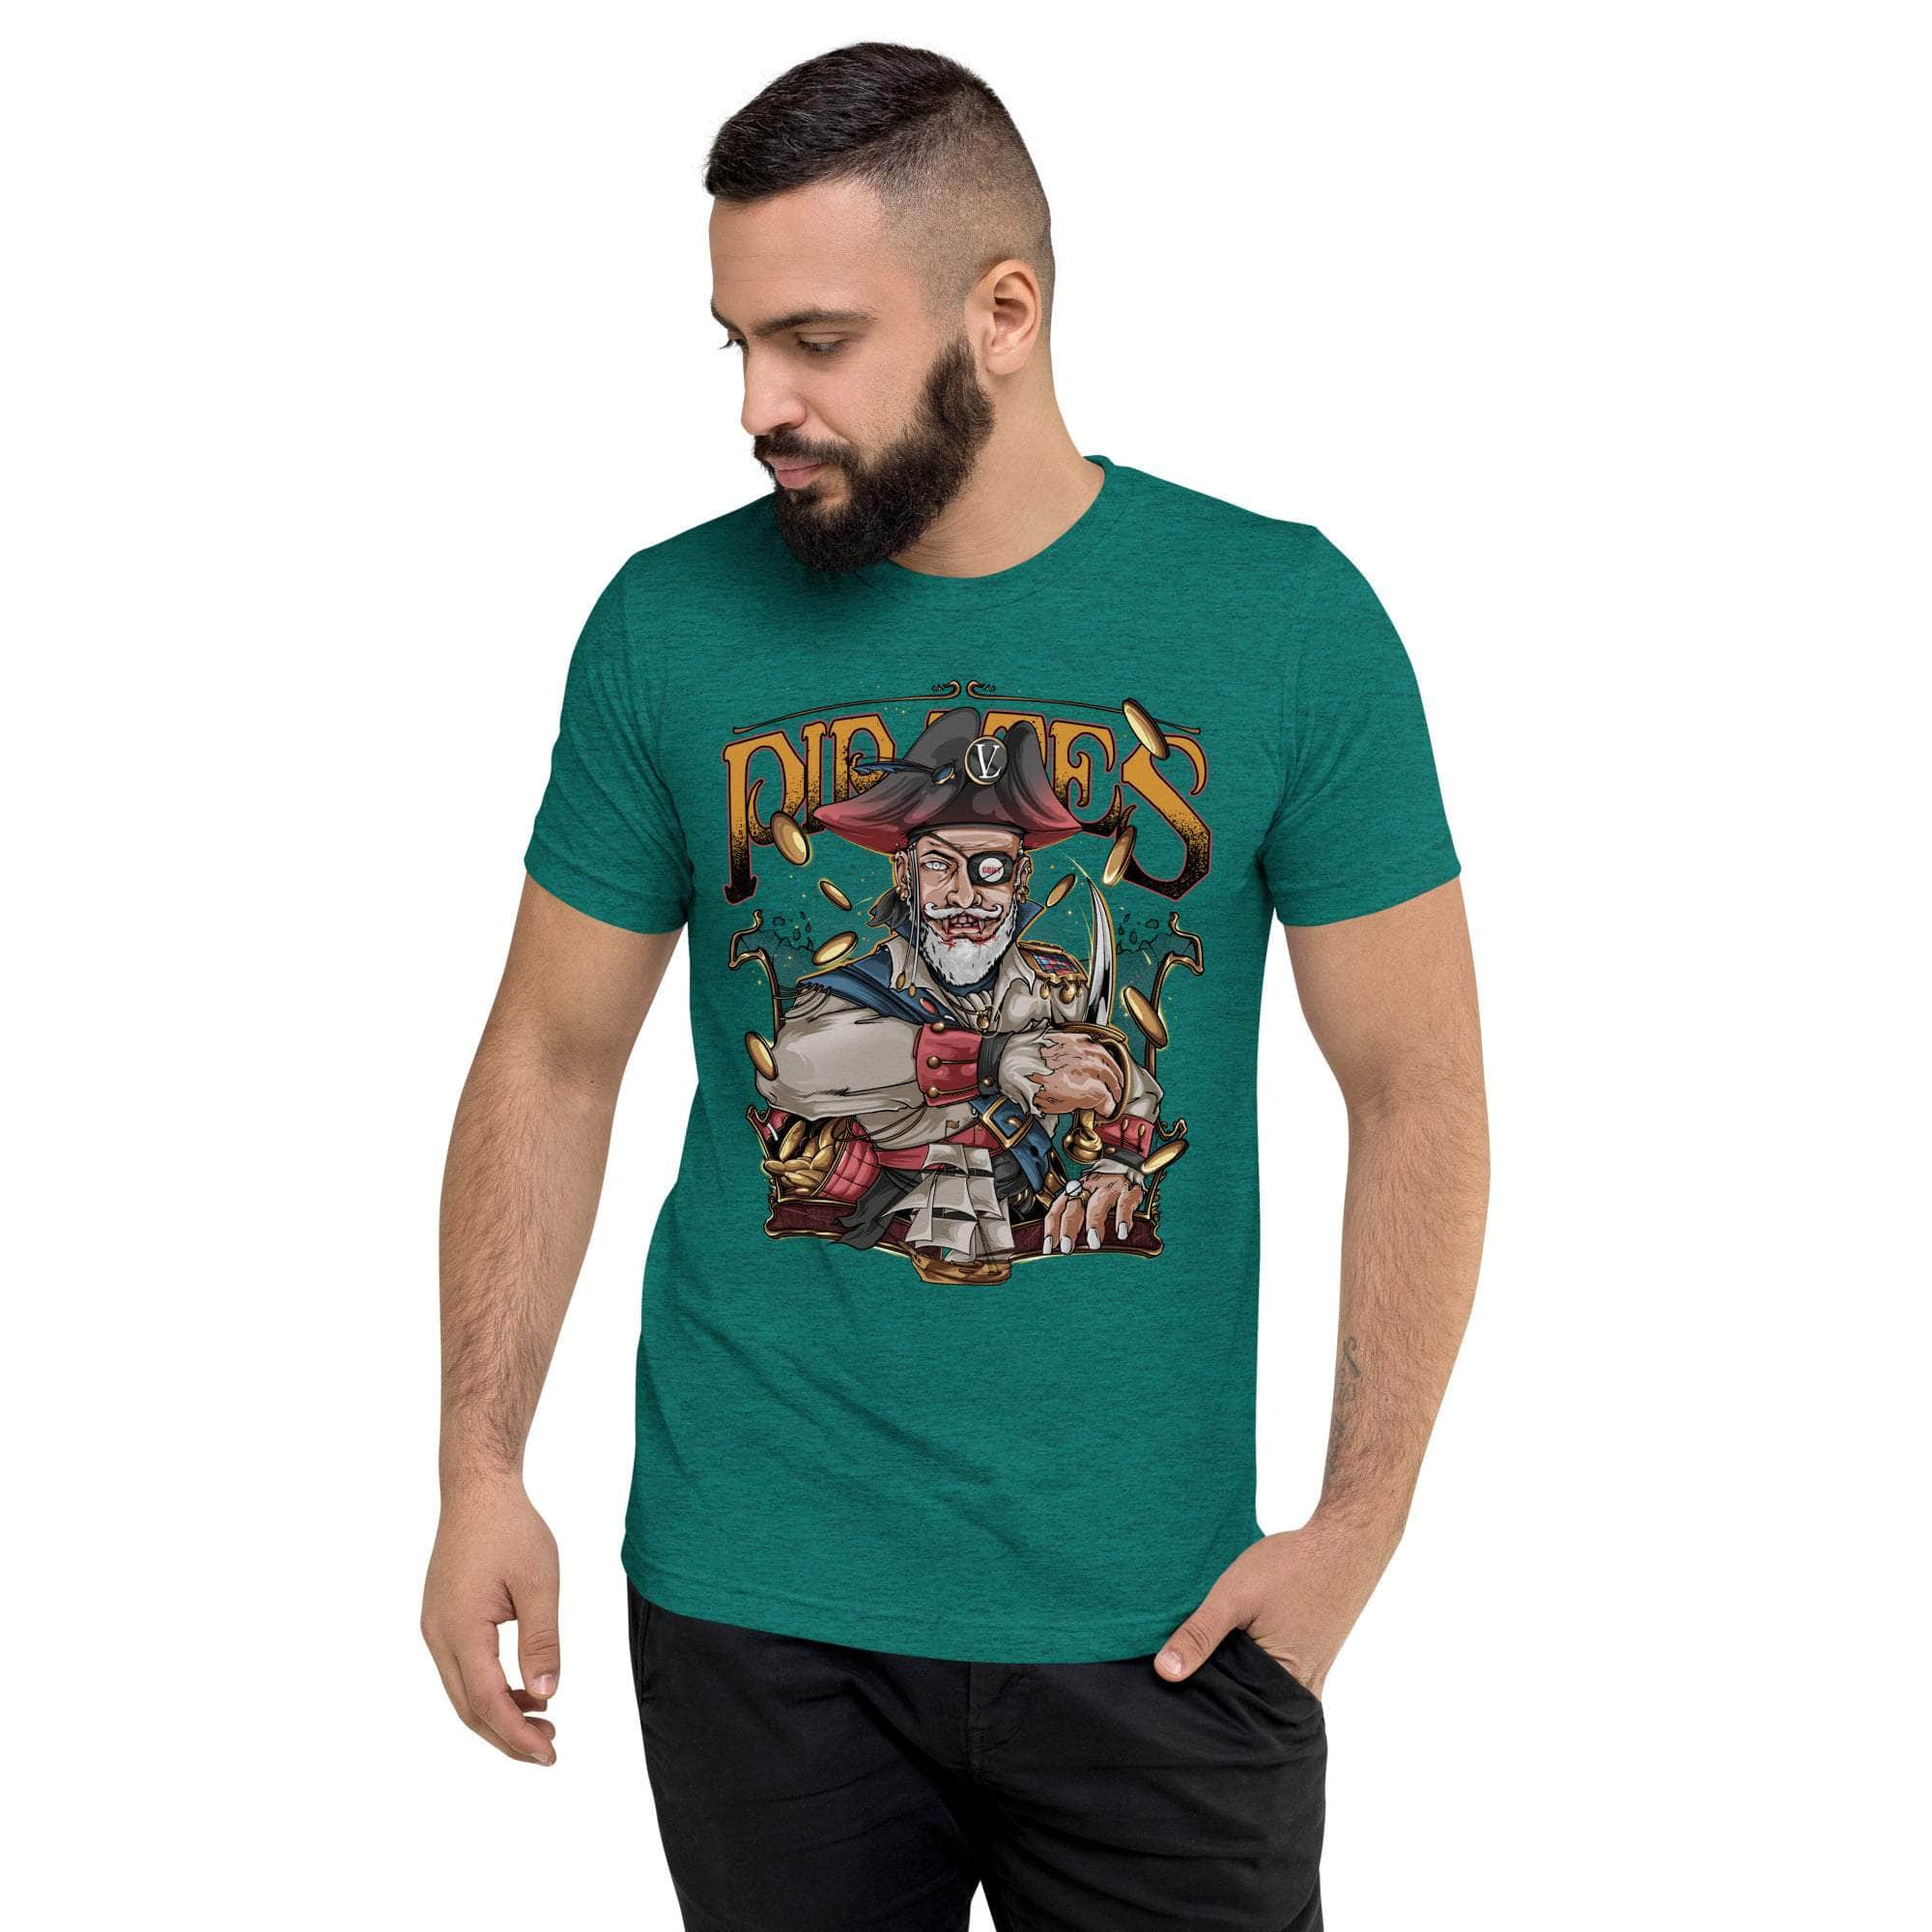 GBNY Teal Triblend / XS Vamp Life X GBNY "Pirates King" T-shirt - Men's 4461701_6592